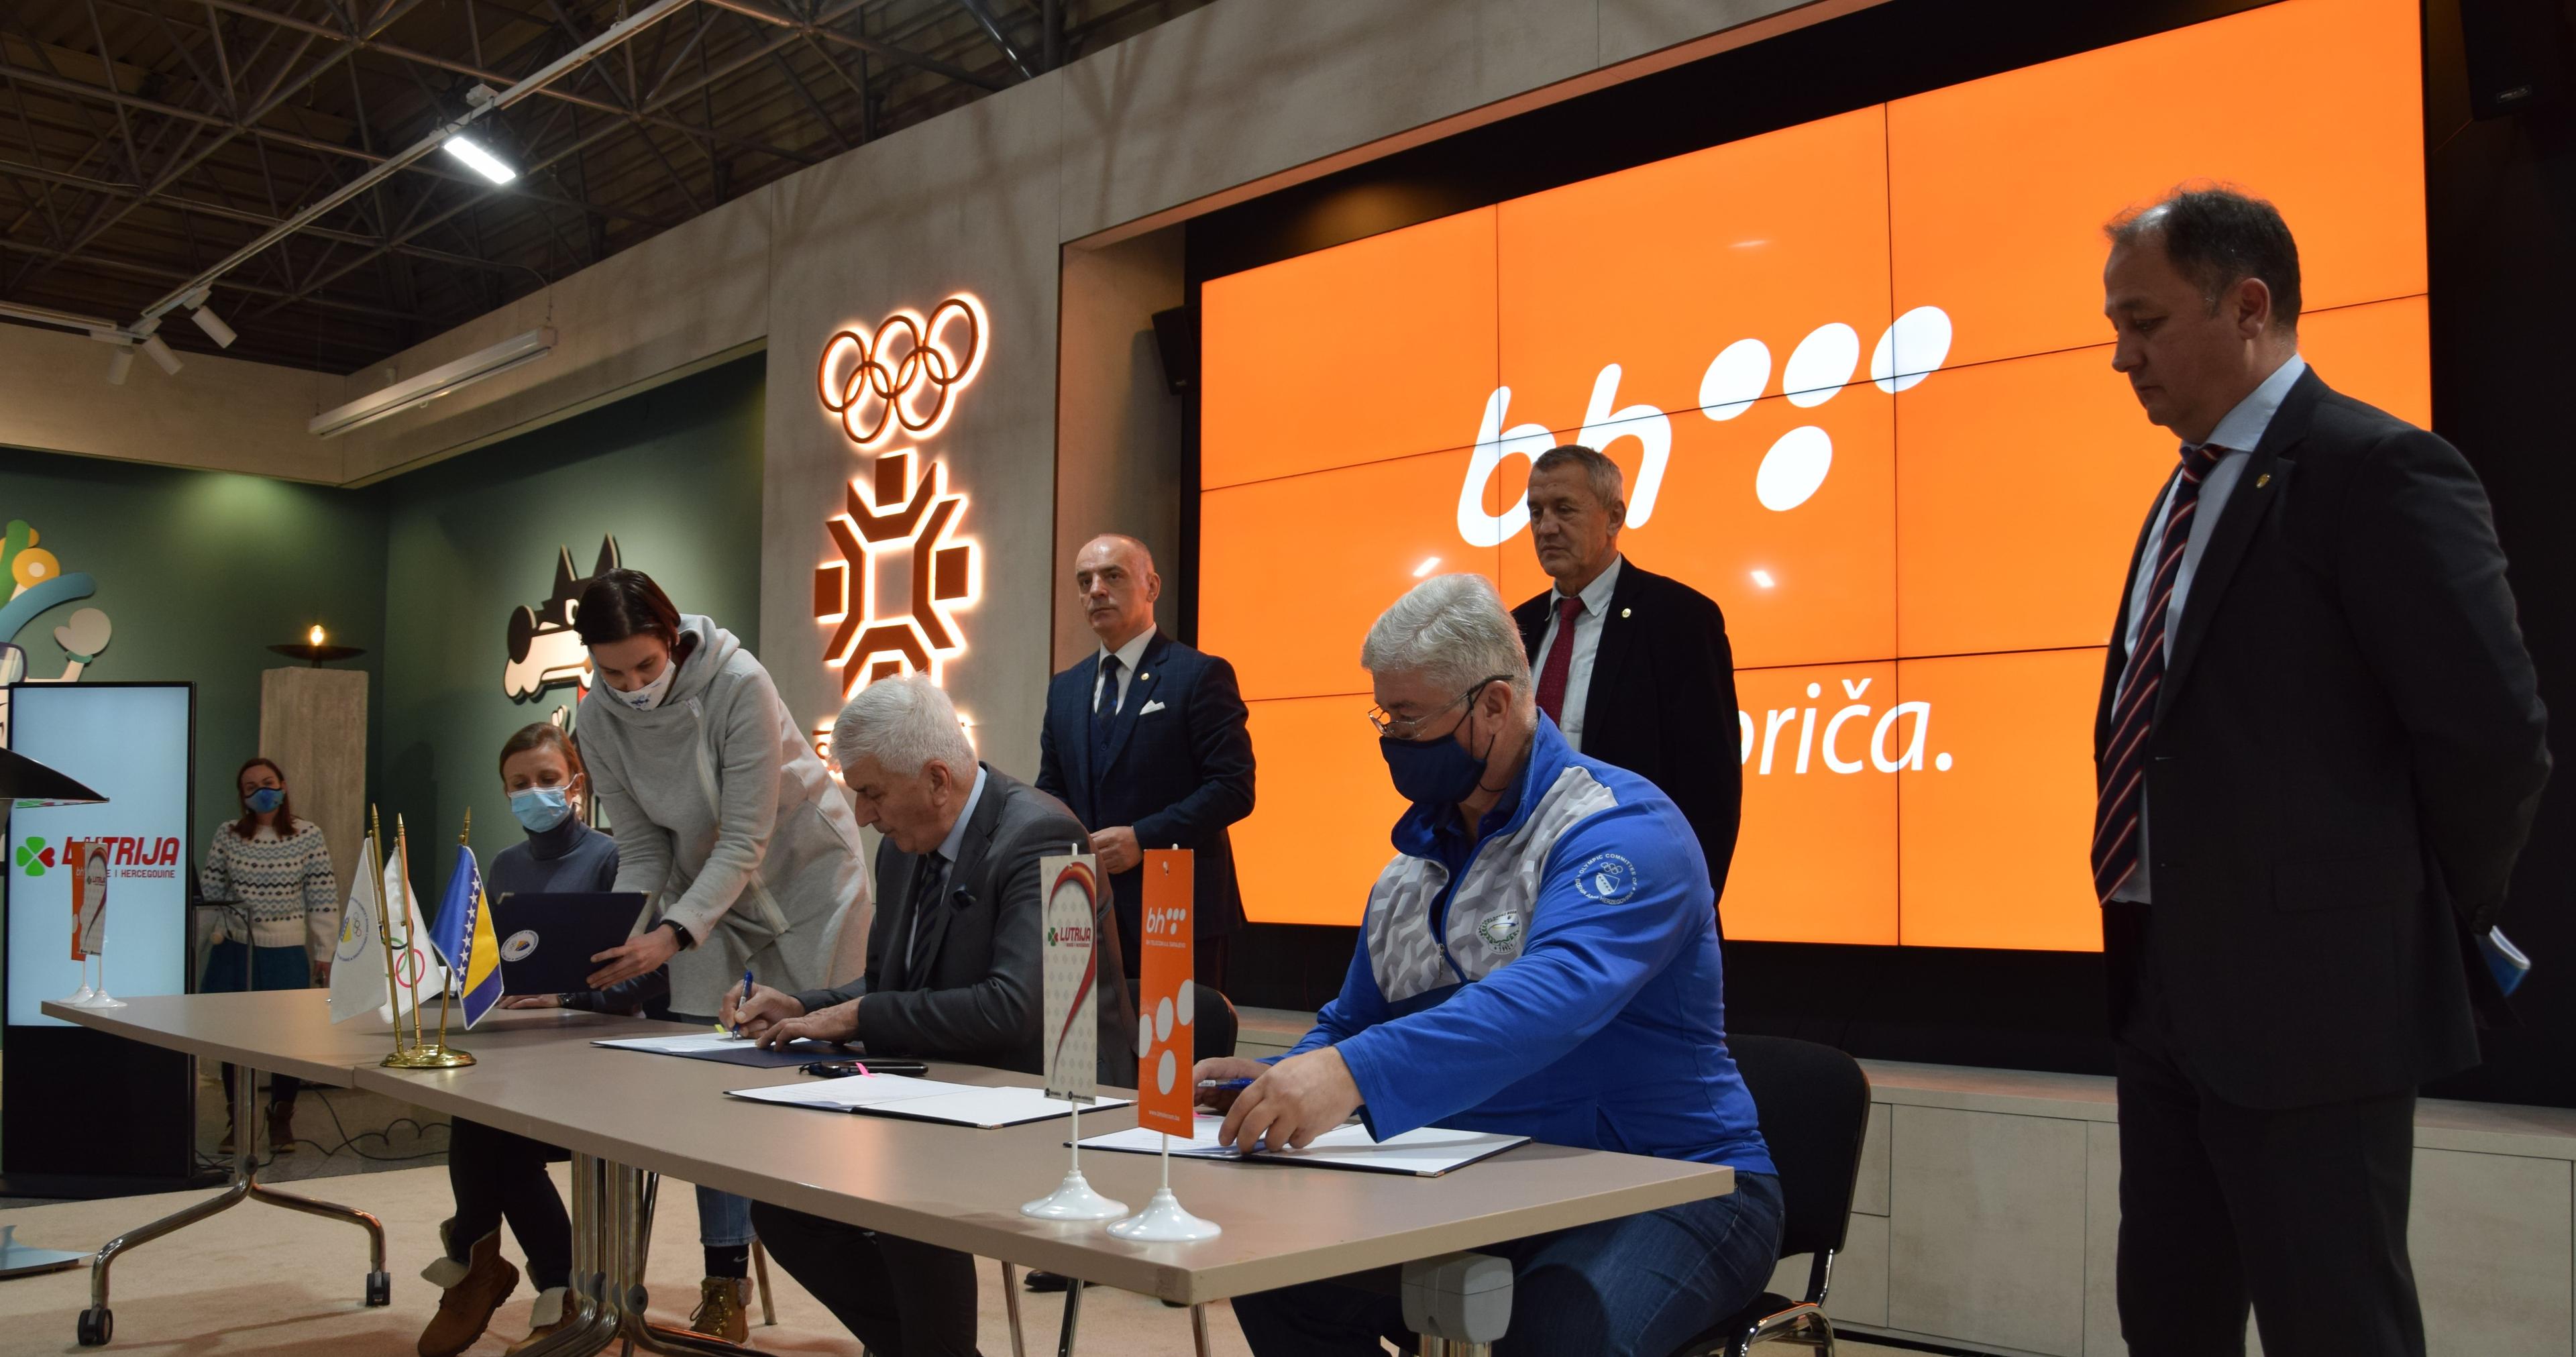 Olimpijski komitet BiH našim sportistima želi puno sreće u pripremama za ZOI Peking 2022 i EYOF Vuokatti 2022 - Avaz